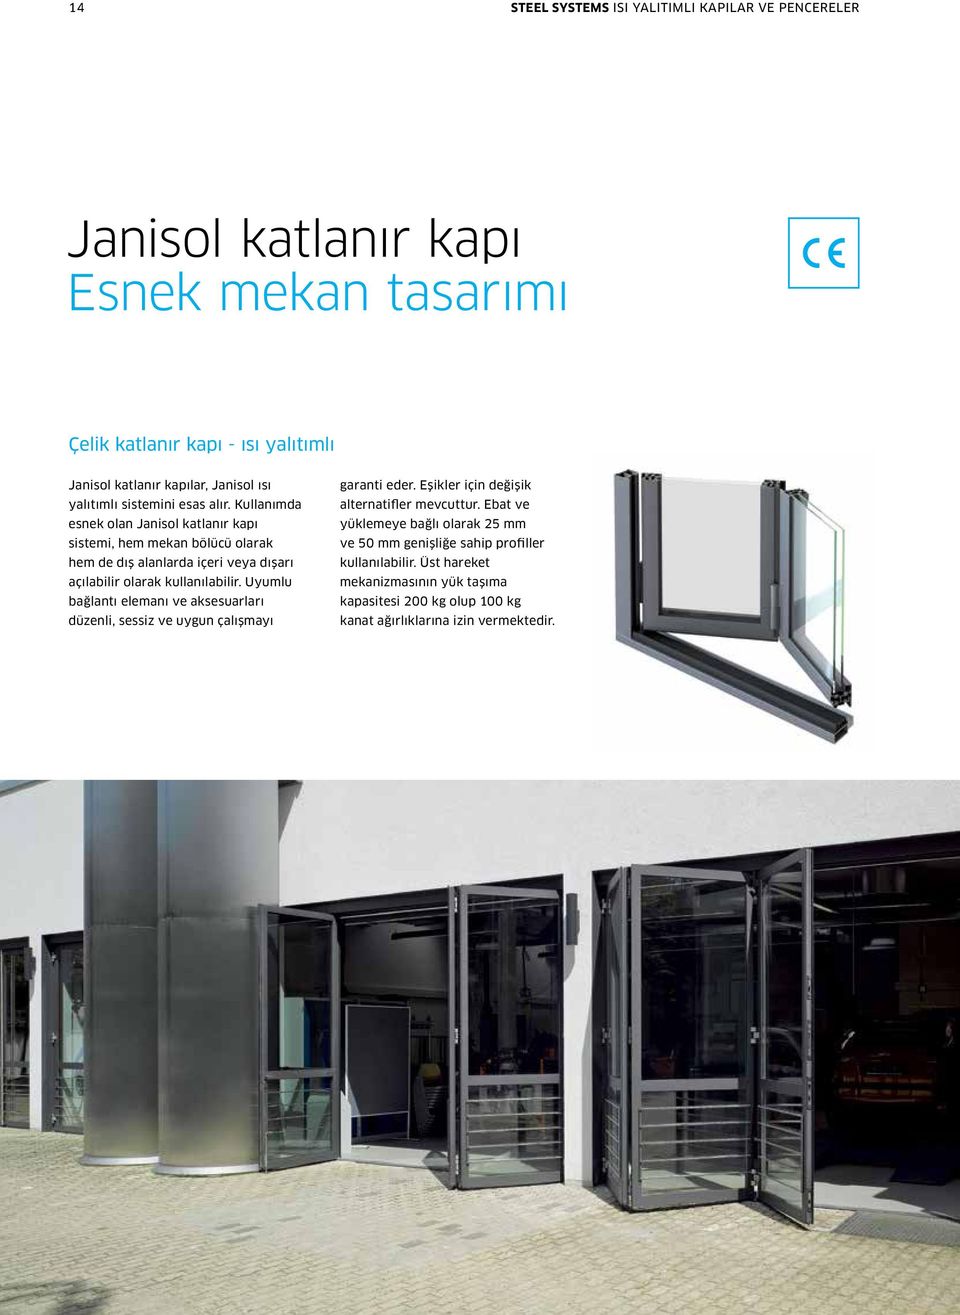 Kullanımda esnek olan Janisol katlanır kapı sistemi, hem mekan bölücü olarak hem de dış alanlarda içeri veya dışarı açılabilir olarak kullanılabilir.